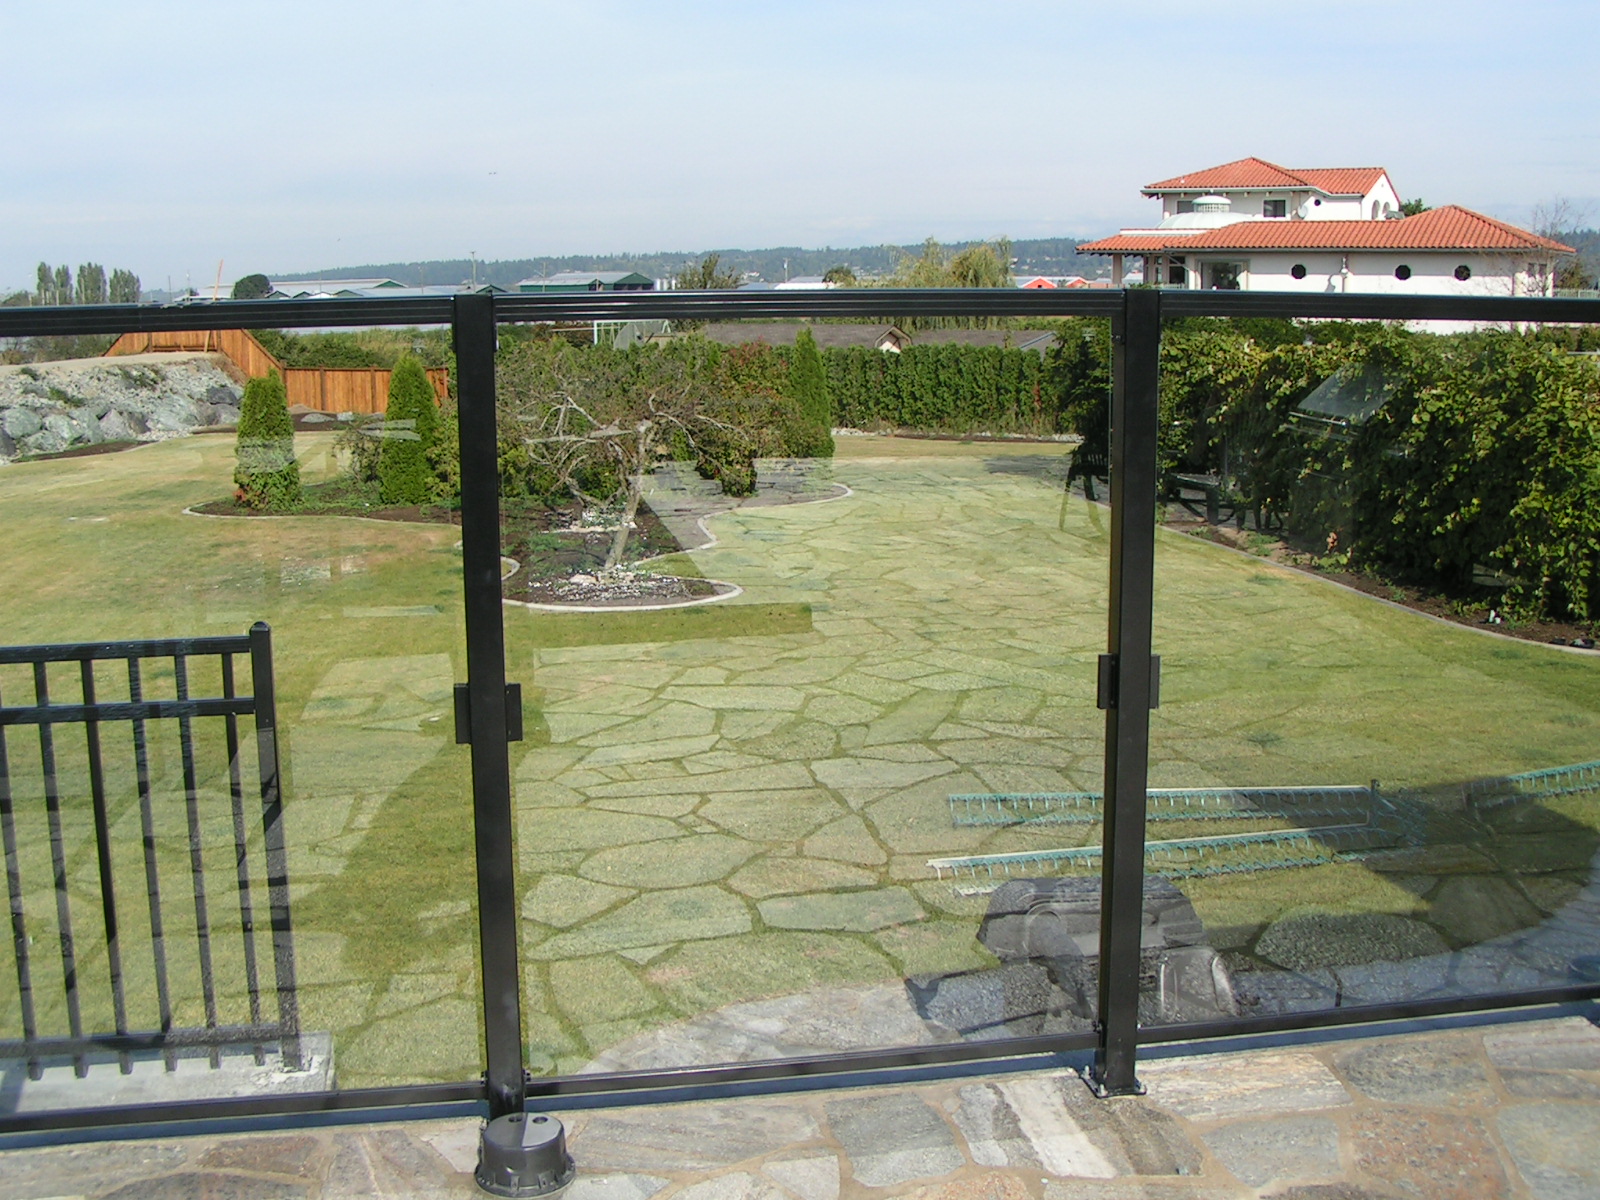 glass railings